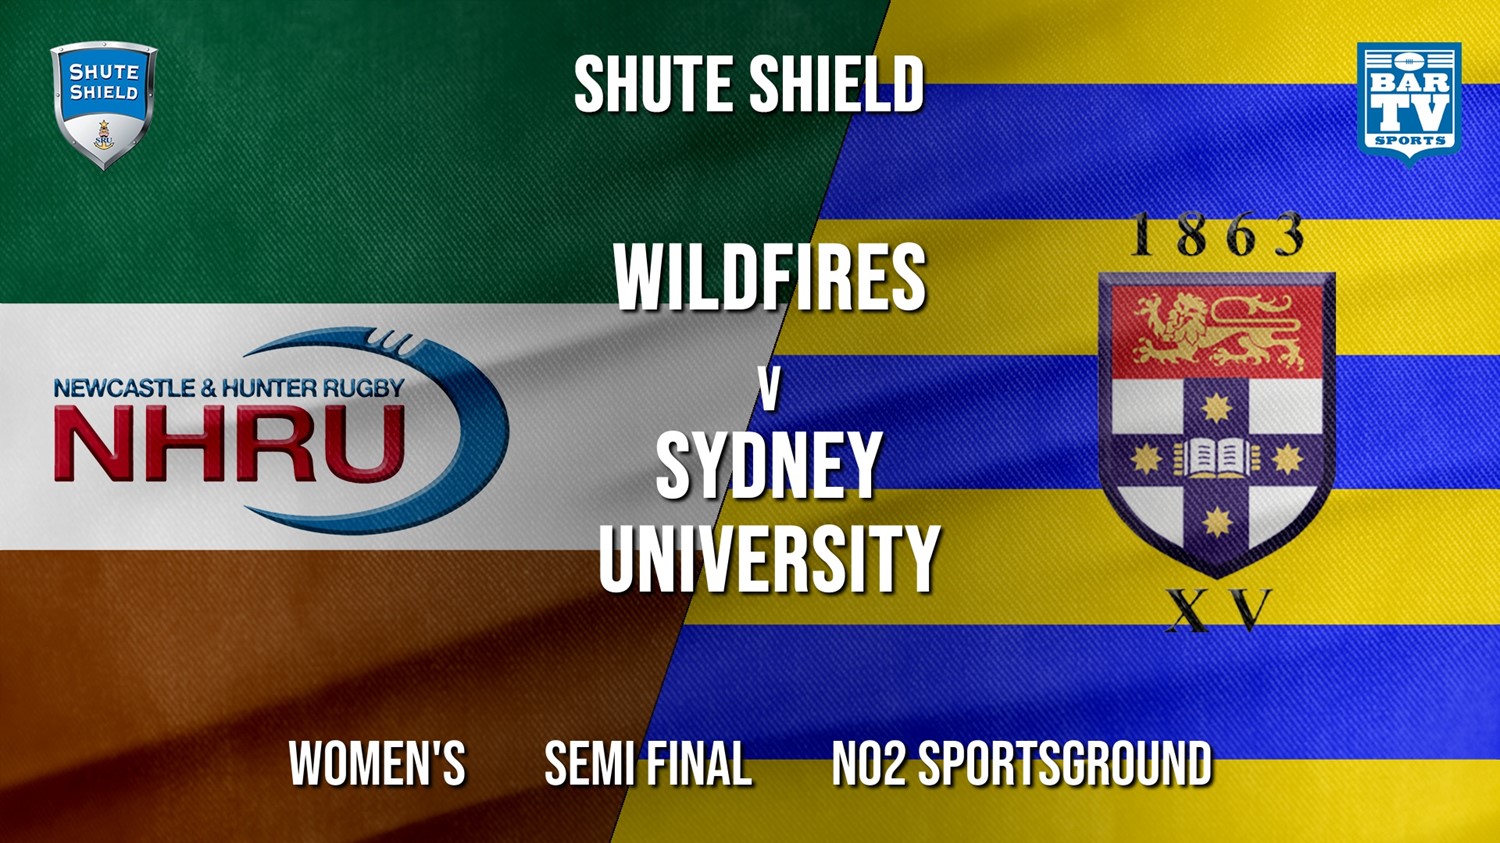 Shute Shield Semi Final - Women's - NHRU Wildfires v Sydney University Minigame Slate Image